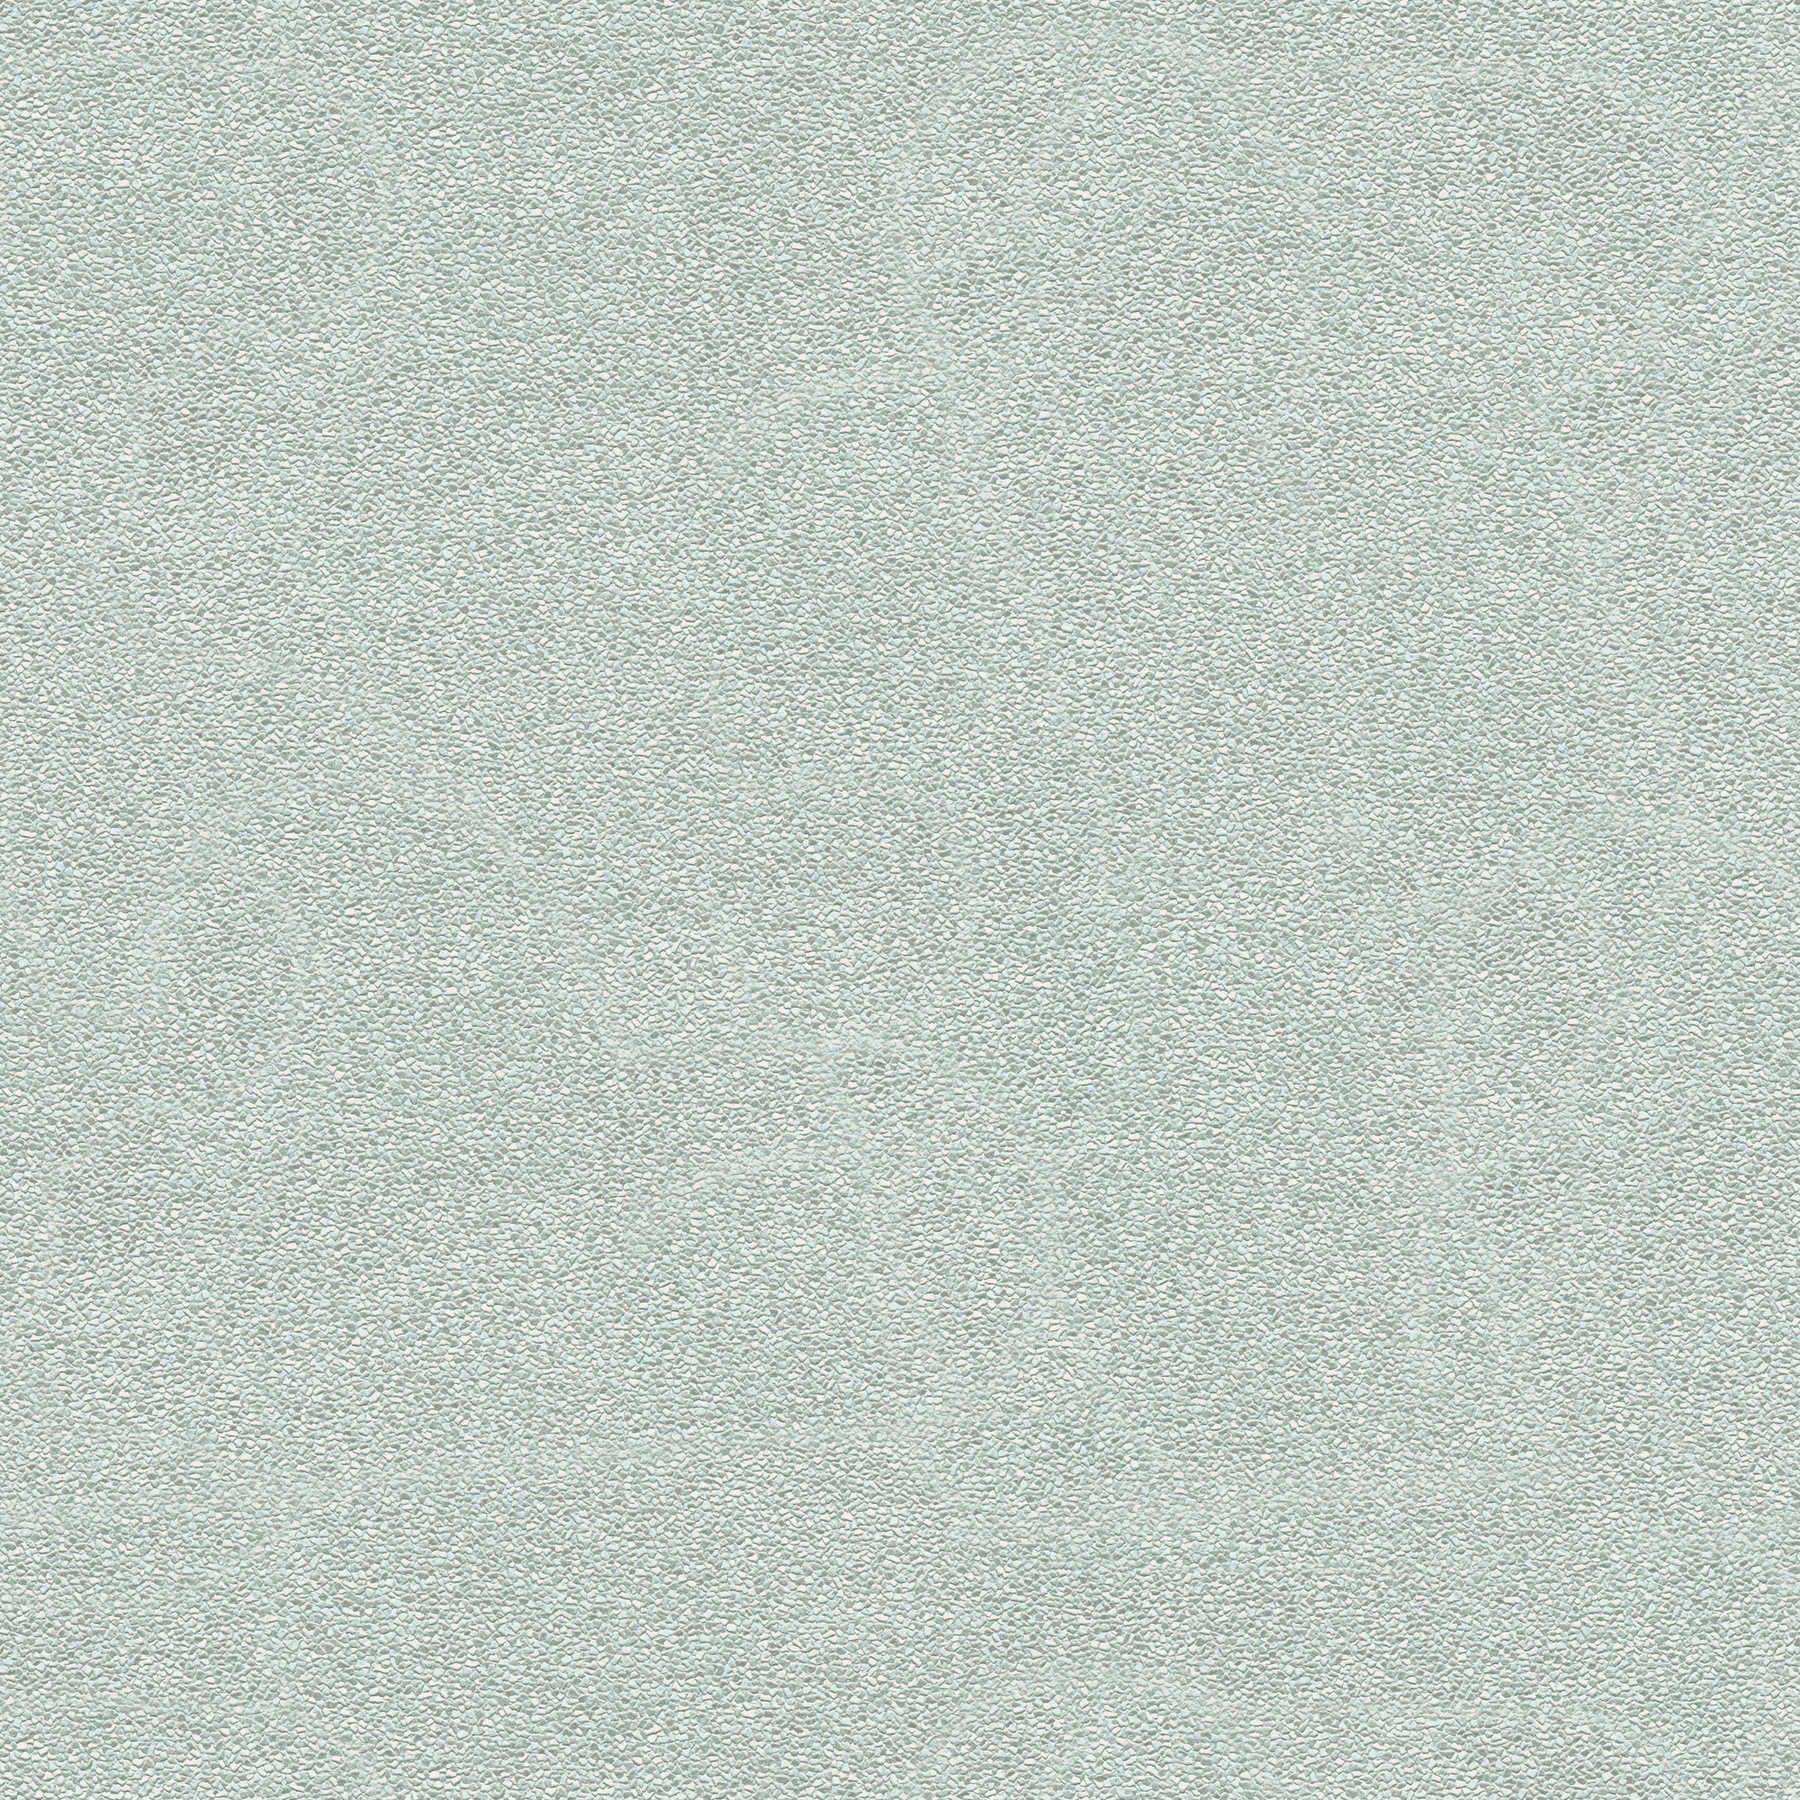 Tapete Sandstruktur in Grau-Grün mit seidenmatt Finish
